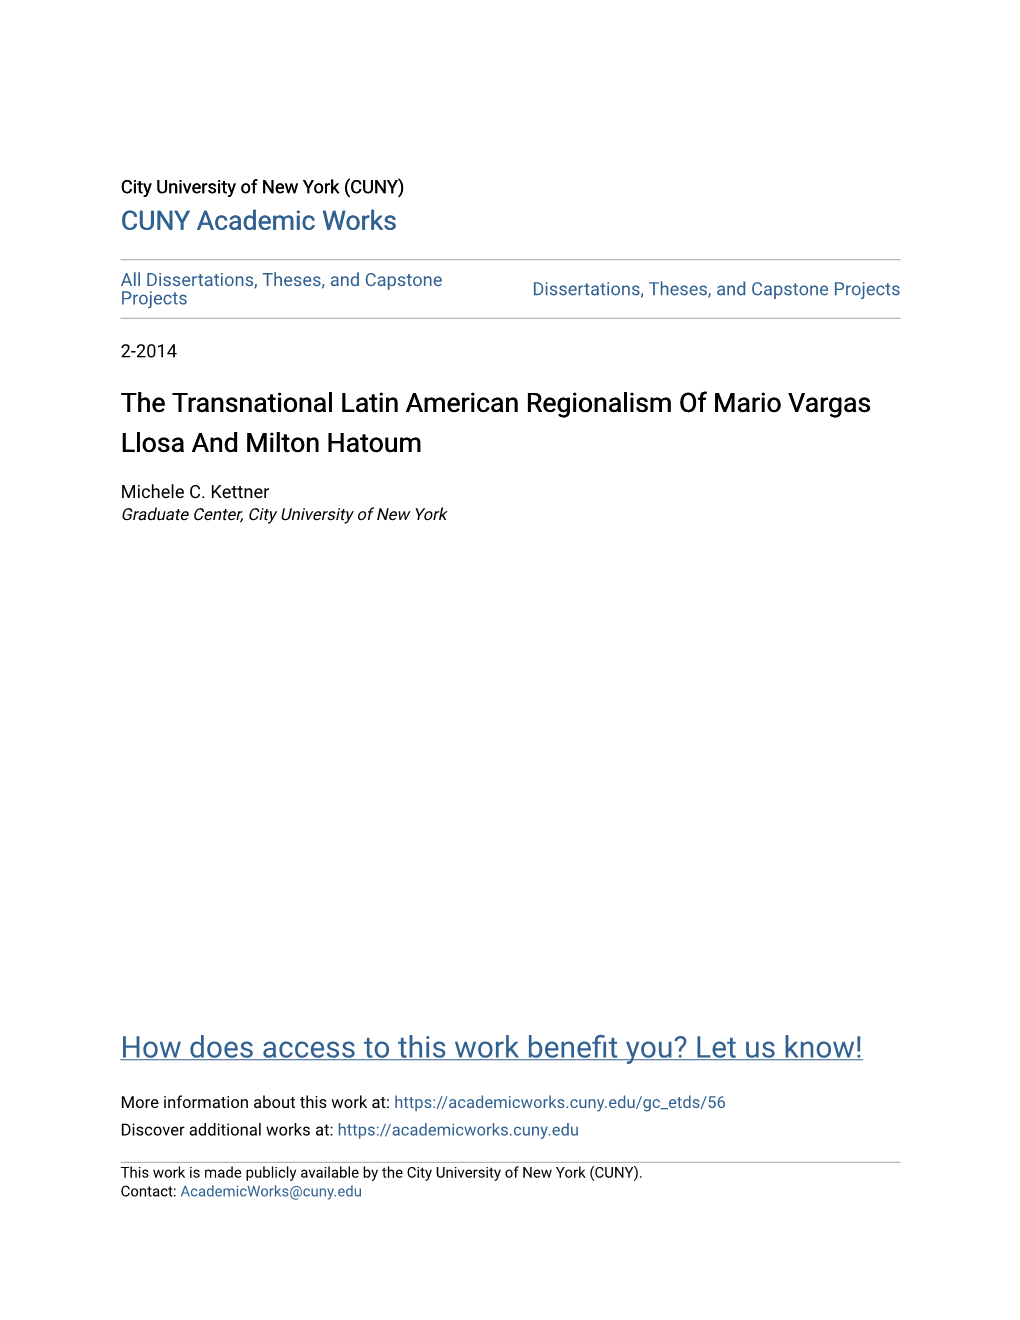 The Transnational Latin American Regionalism of Mario Vargas Llosa and Milton Hatoum